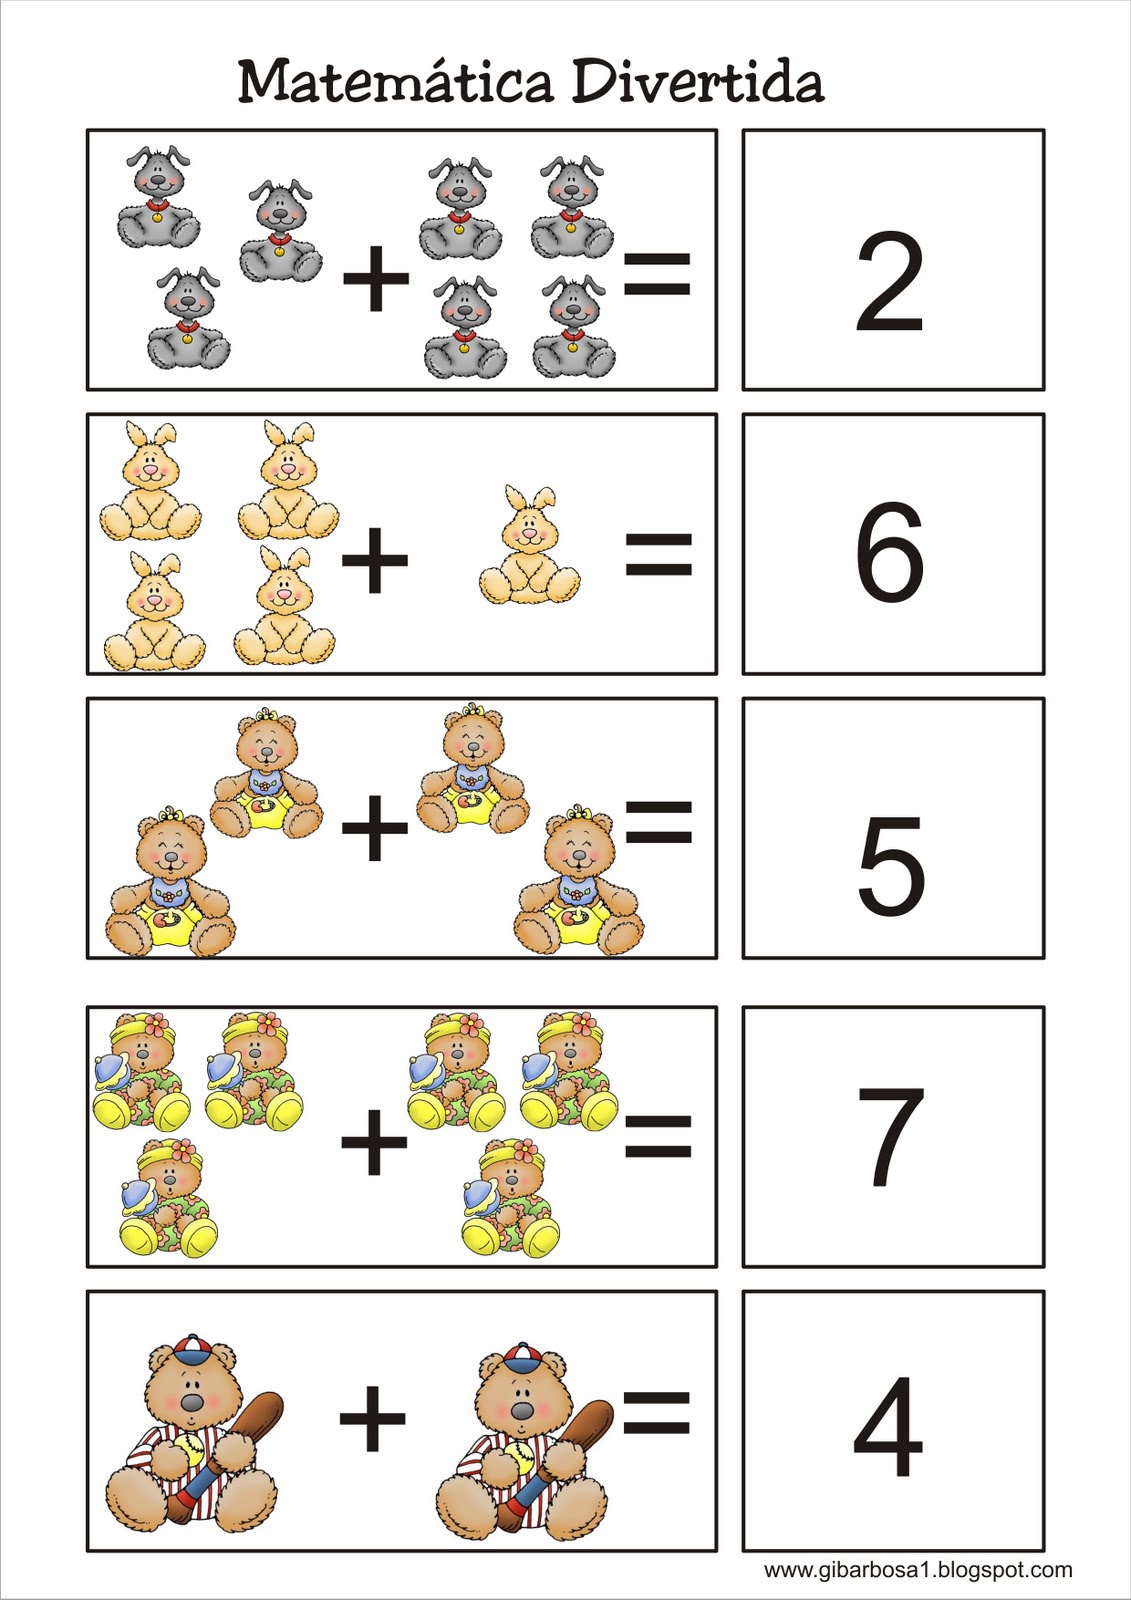 Atividades de matemática divertidas para as crianças